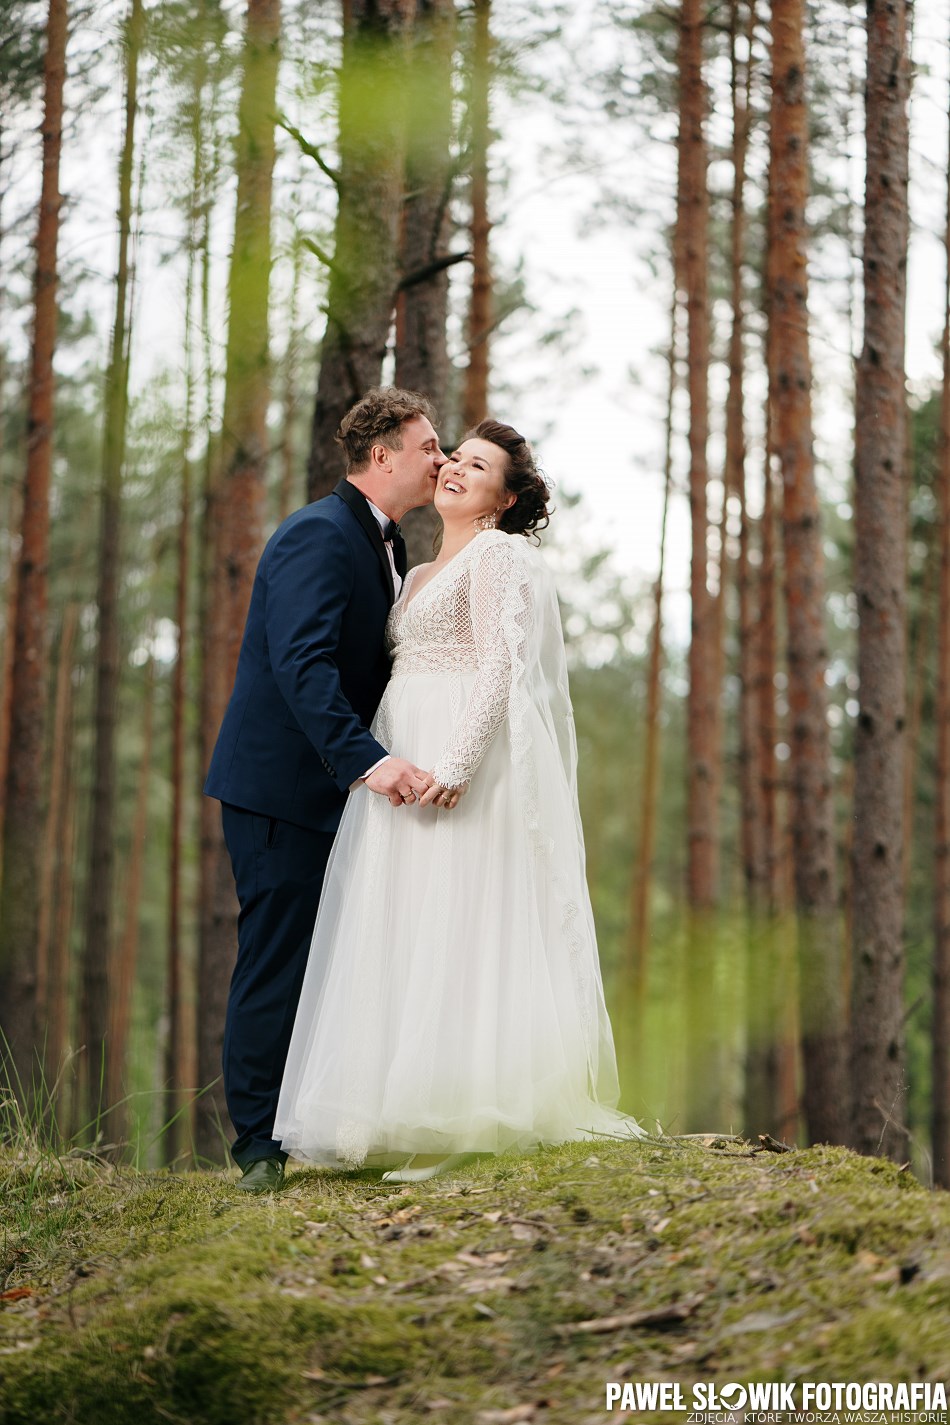 Sesja fotograficzna w lesie: sesja ślubna w lesie?